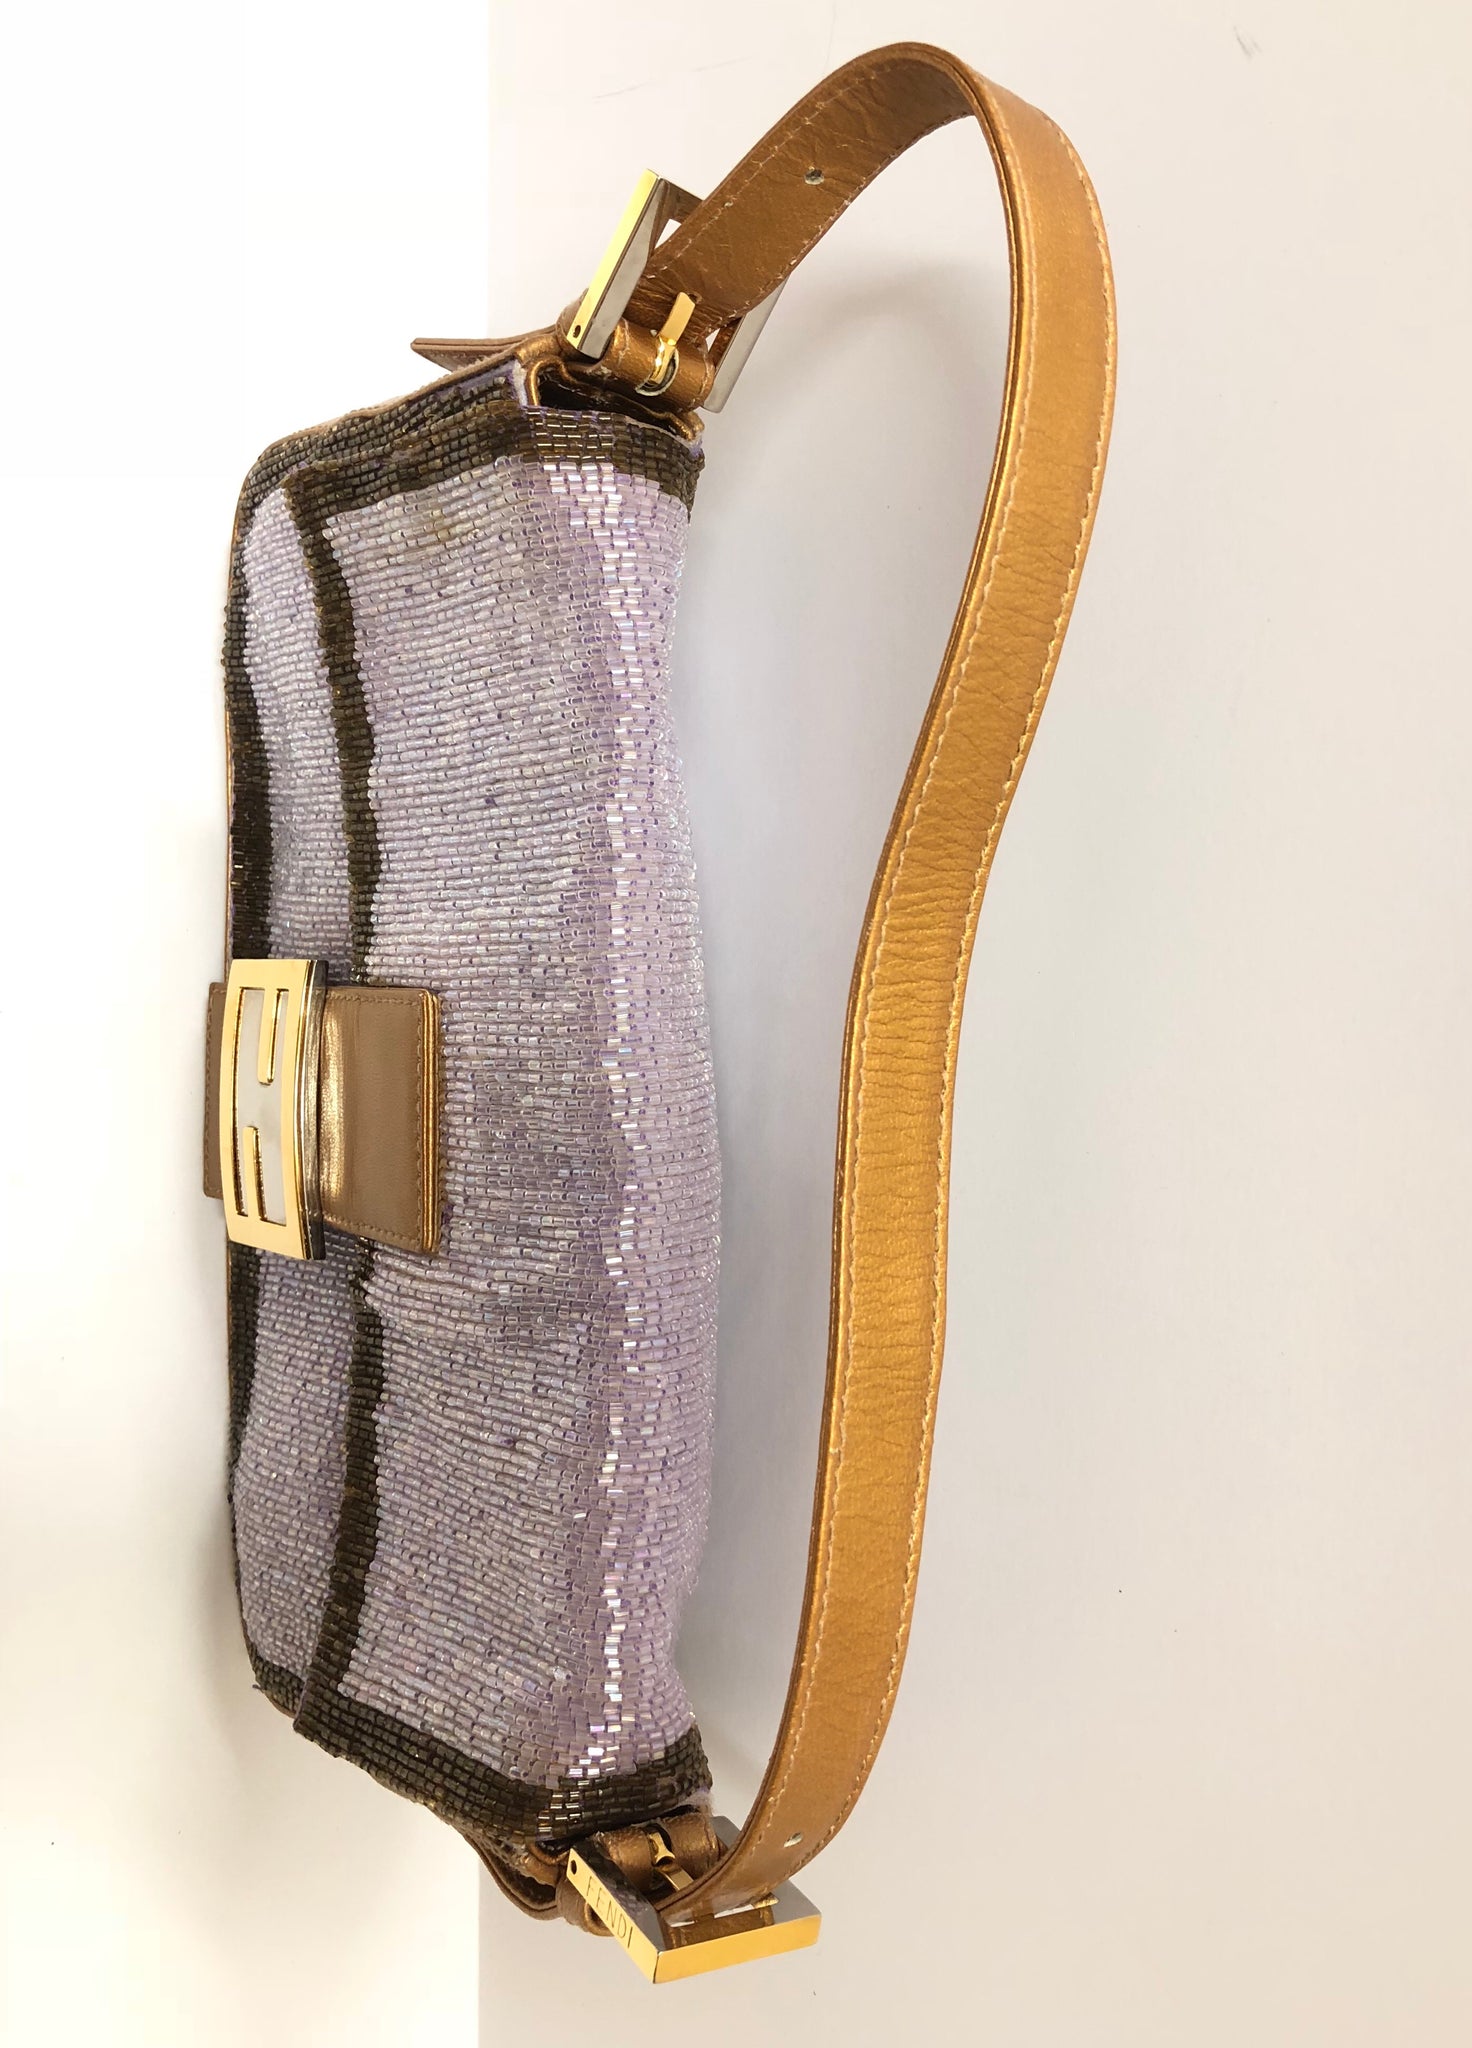 Fendi Baguette Leather Shoulder Bag in Purple